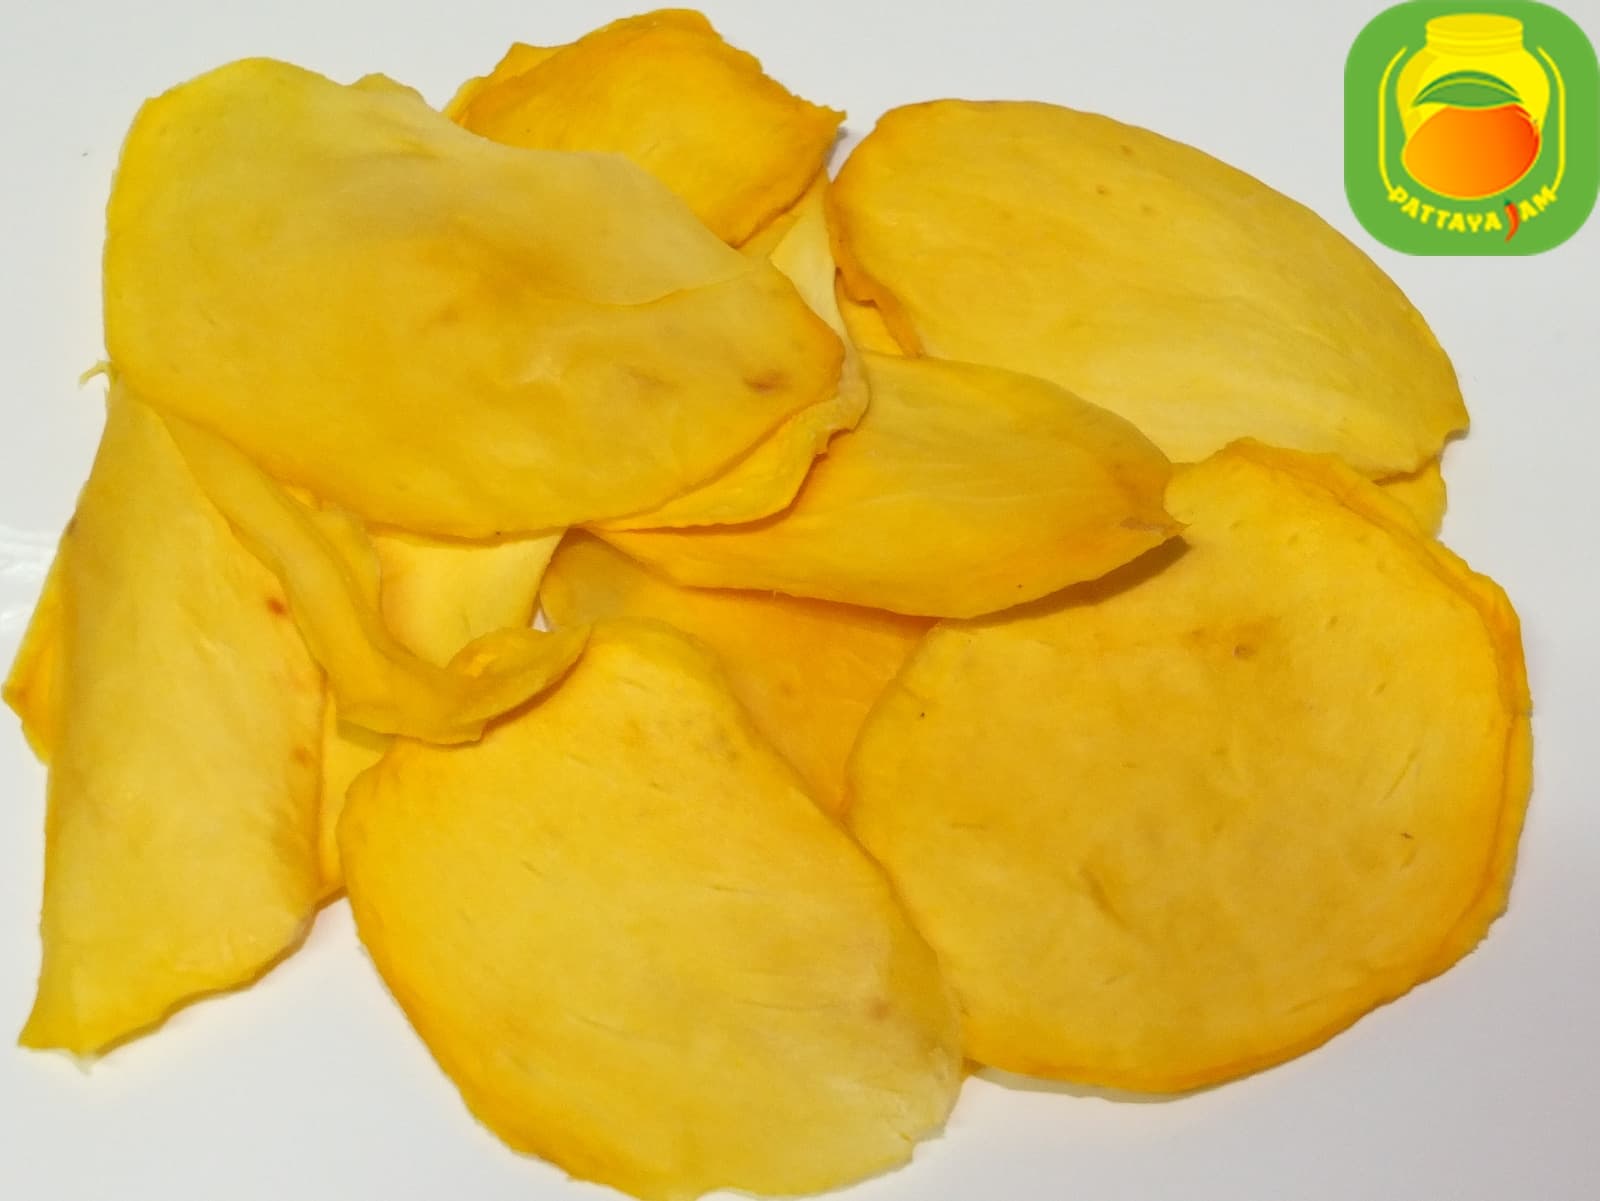 При какой температуре производите сушку, чипсов из манго, ананаса и других фруктов?